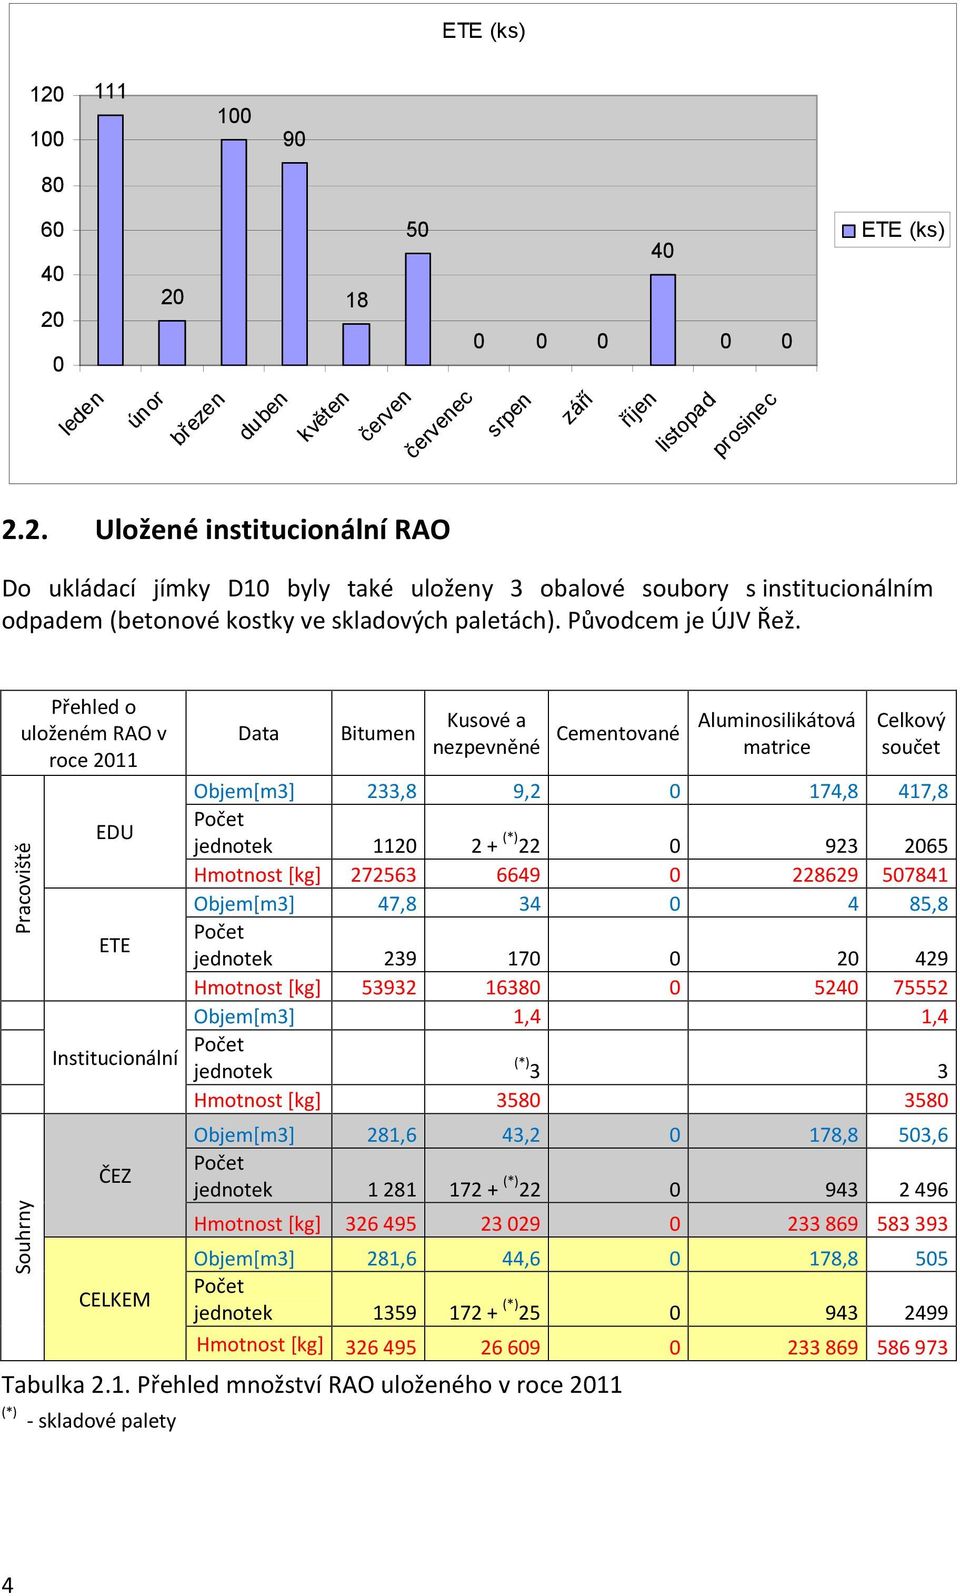 Přehled o uloženém RAO v roce 2011 Pracoviště Souhrny EDU ETE Institucionální ČEZ CELKEM Data Bitumen Kusové a nezpevněné Cementované Aluminosilikátová matrice Celkový součet Objem[m3] 233,8 9,2 0